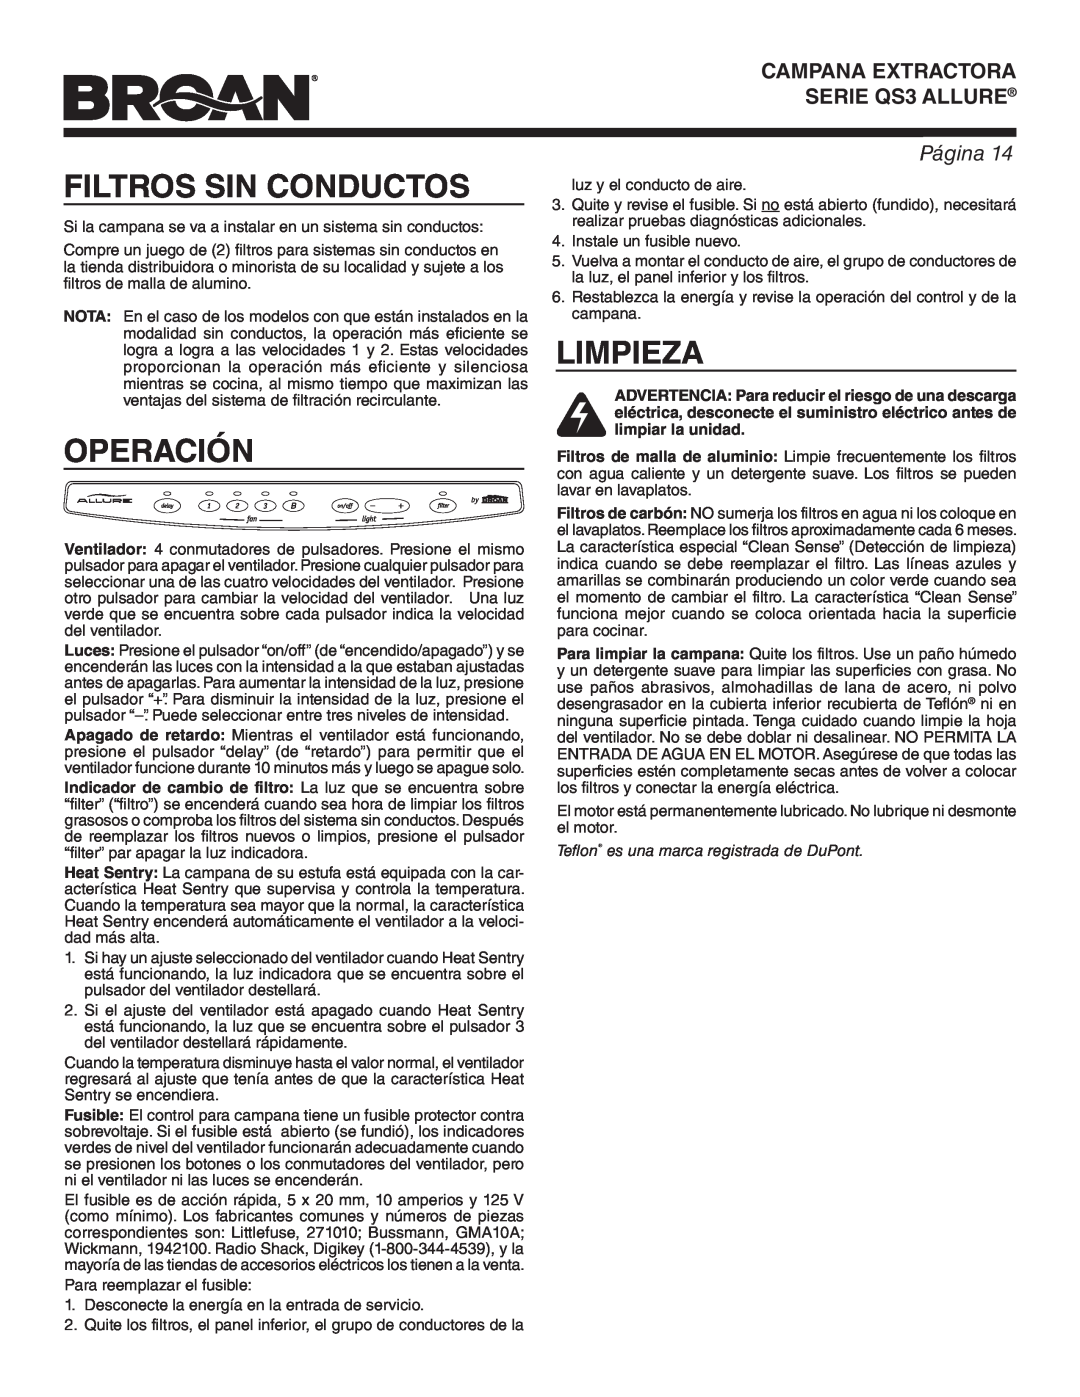 Broan QS342SS warranty Filtros Sin Conductos, Operación, Limpieza, Teflon es una marca registrada de DuPont, Página 